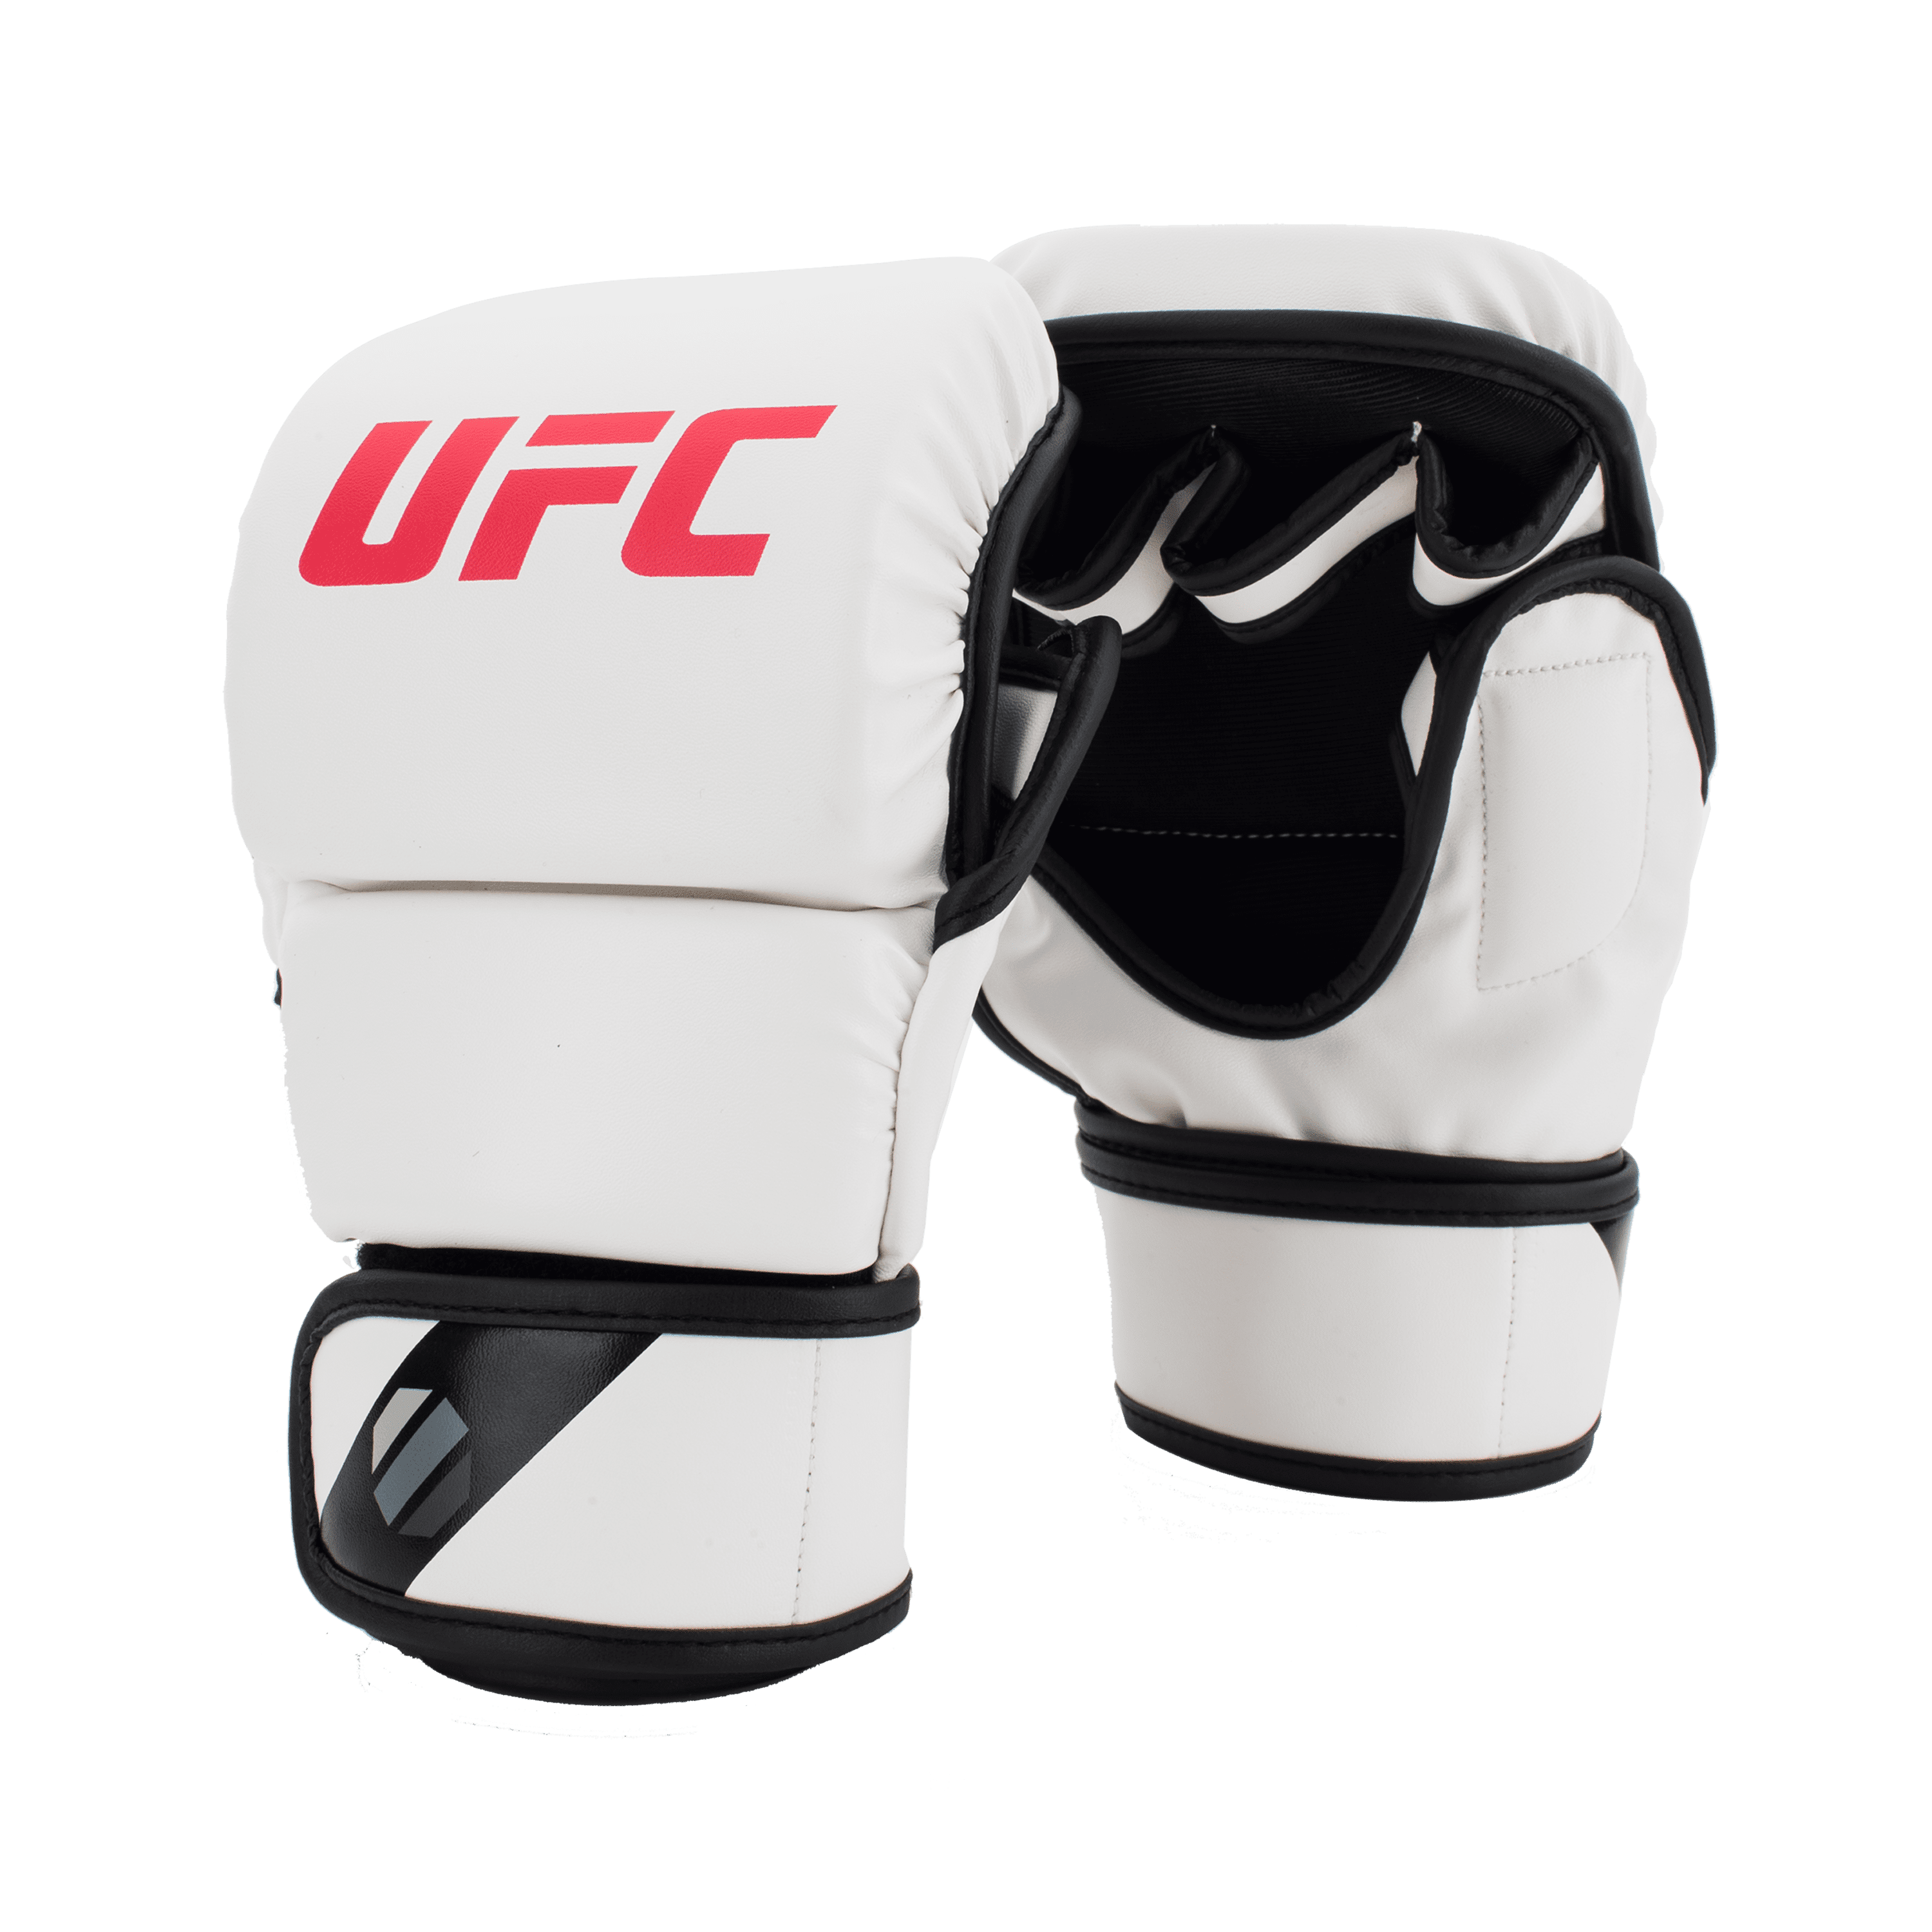 Mma gloves 8Oz UFC 